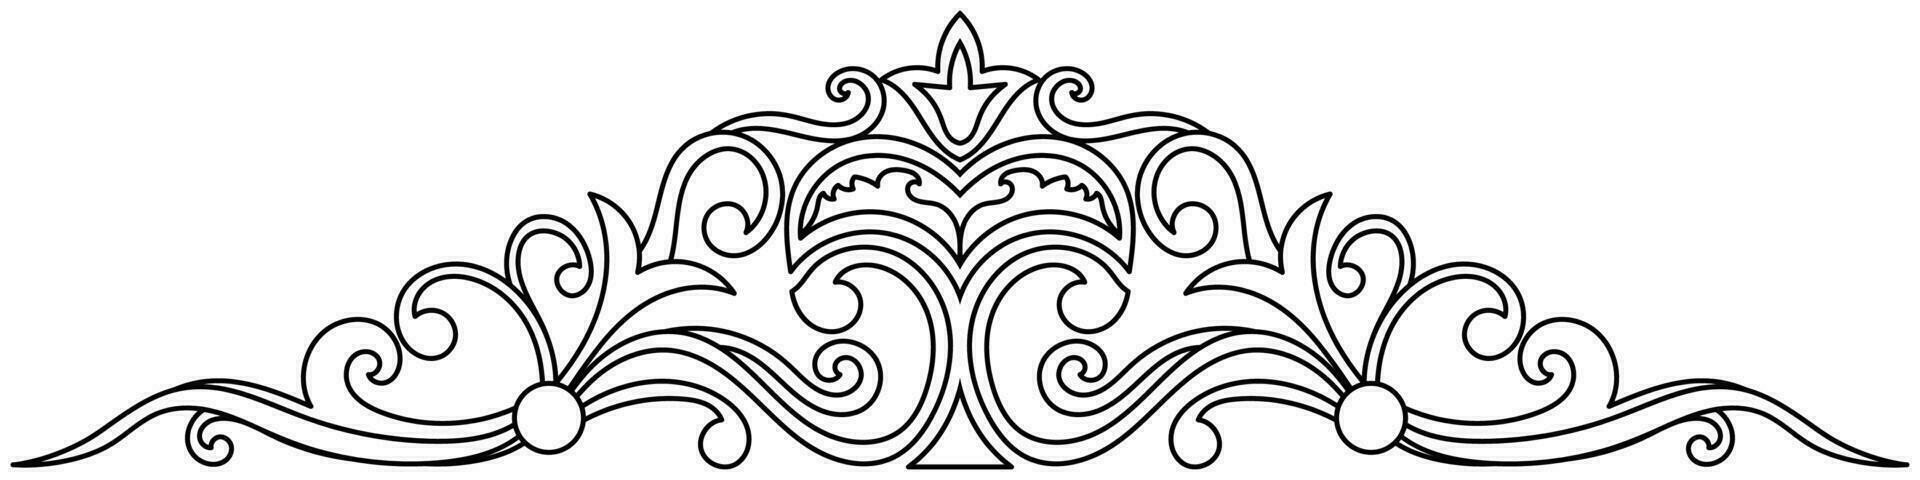 Clásico barroco diseño modelo elemento grabado retro estilo vector